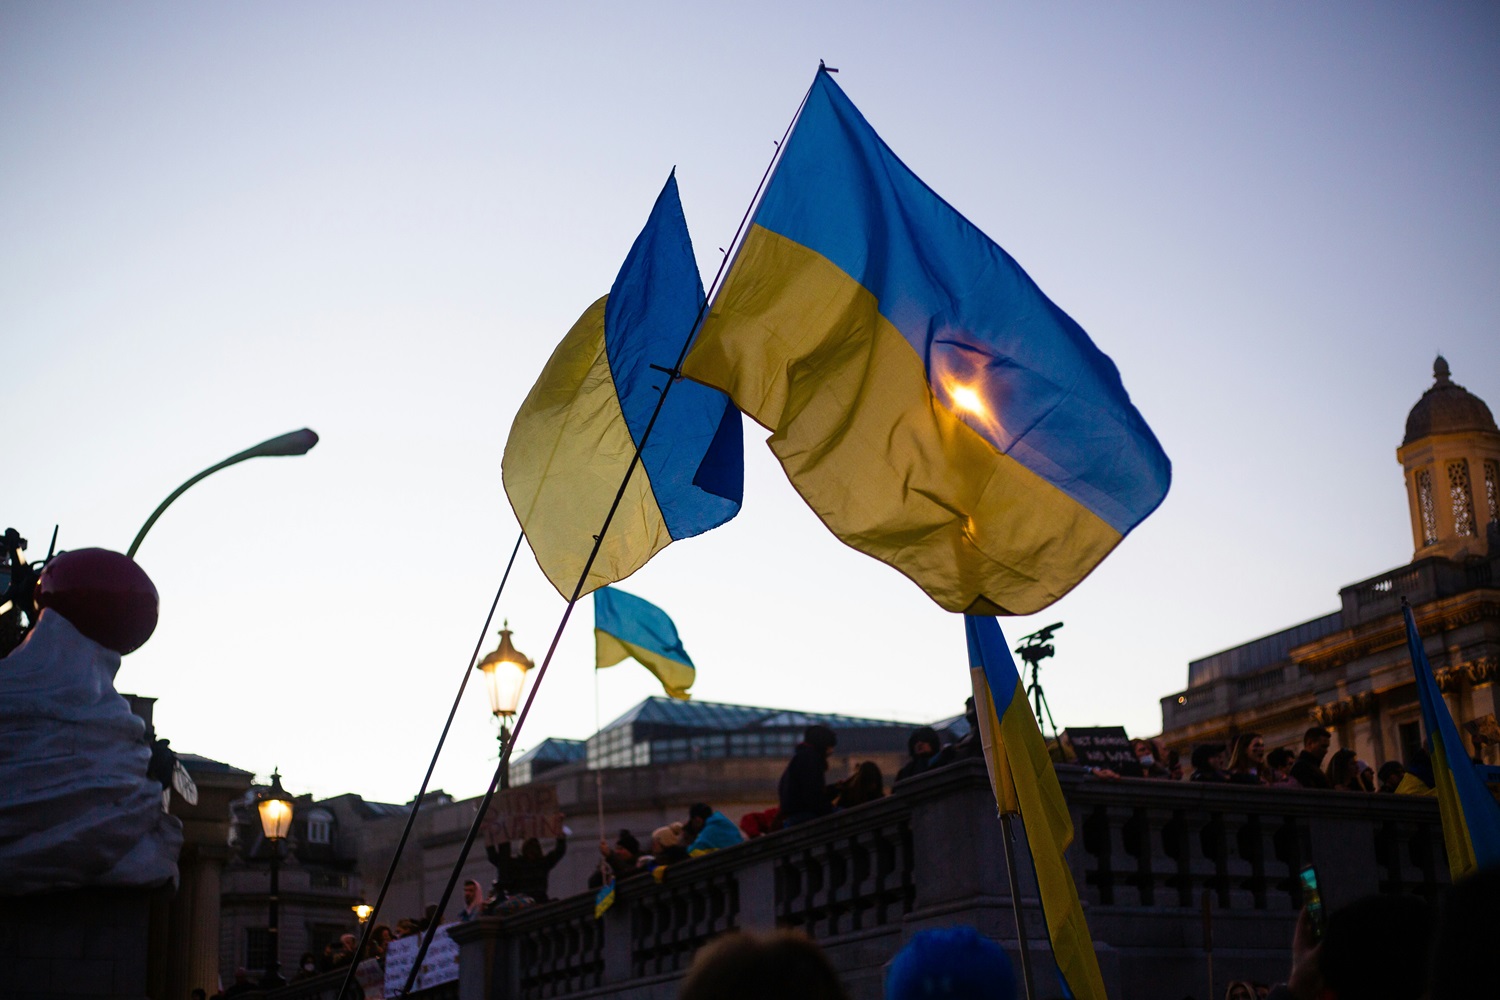 JAV ruošia didesnį nei įprastai pagalbos paketą Ukrainai